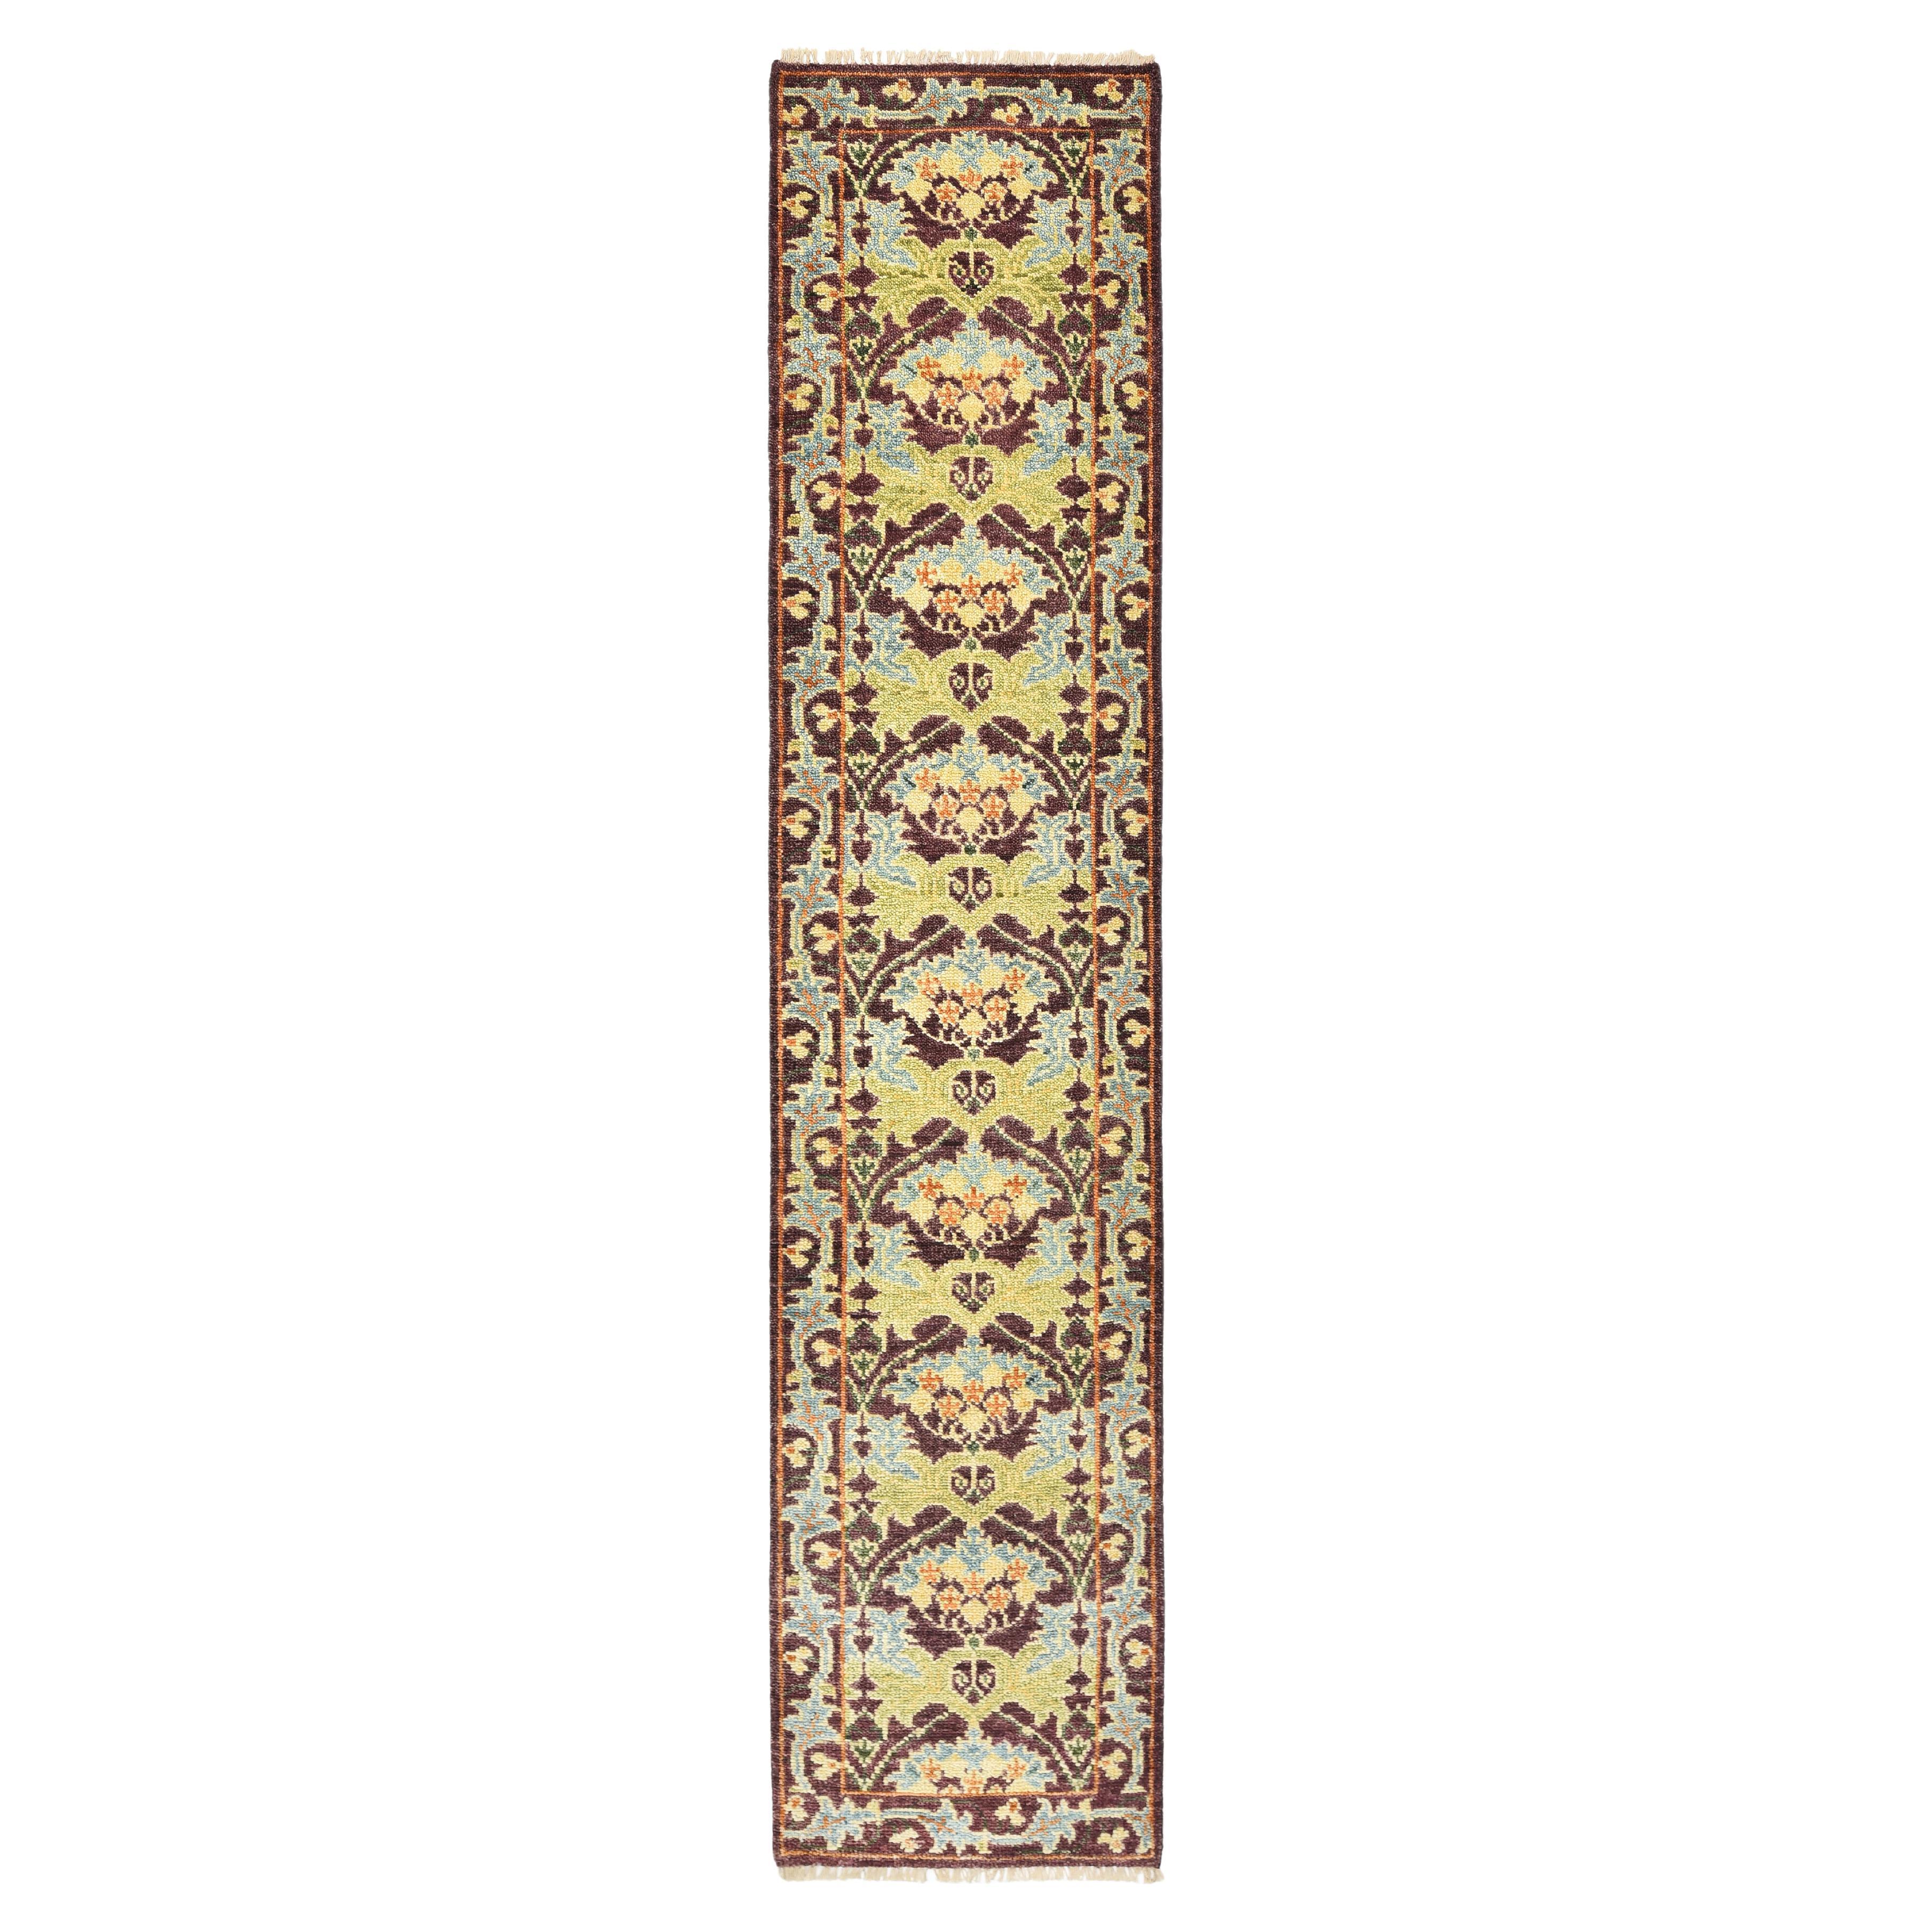 Le tapis de couloir bordeaux d'inspiration William Morris